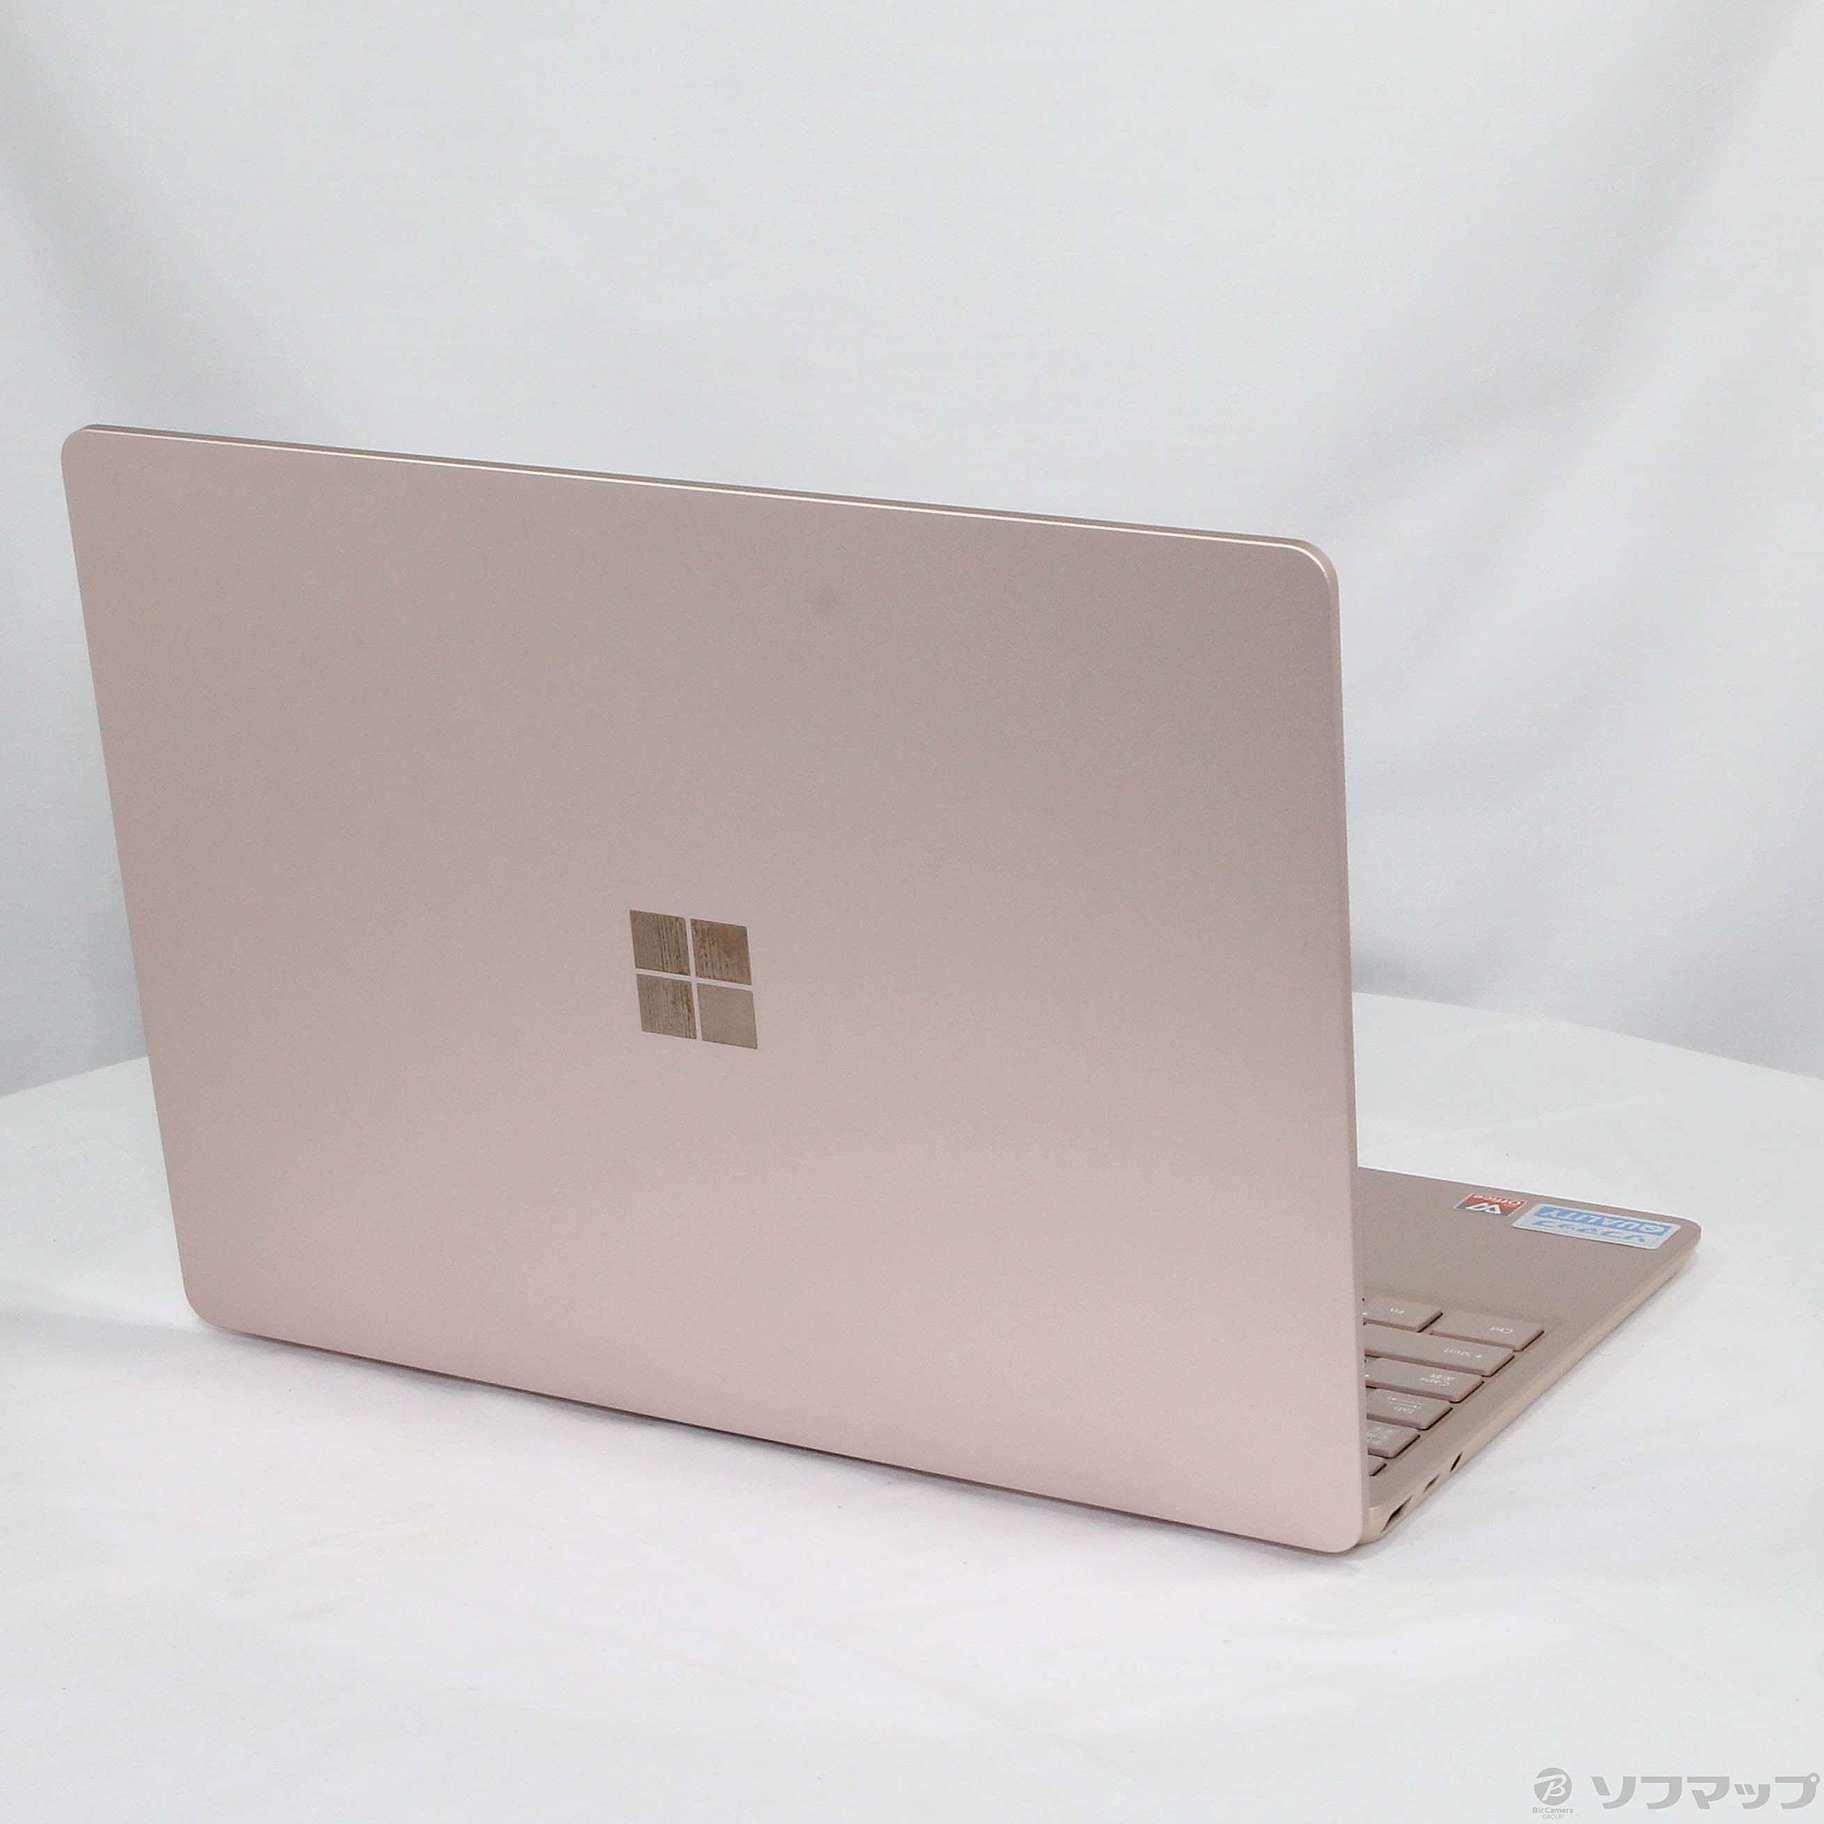 新品未使用・未開封品 THH-00045 Surface Laptop Go